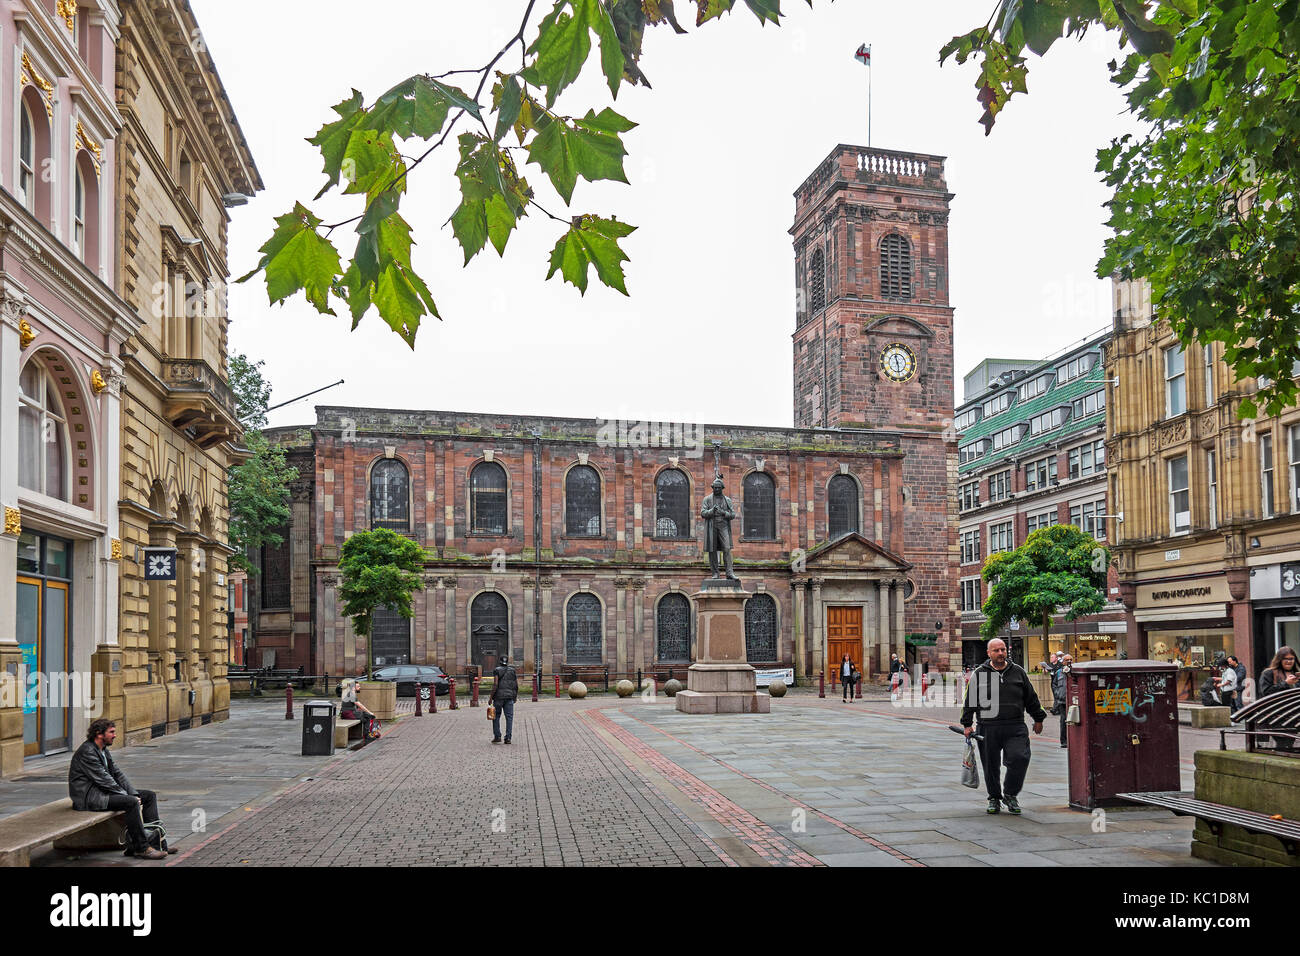 St. Anns Square in der Innenstadt von Manchester, England, Großbritannien, Großbritannien. Stockfoto